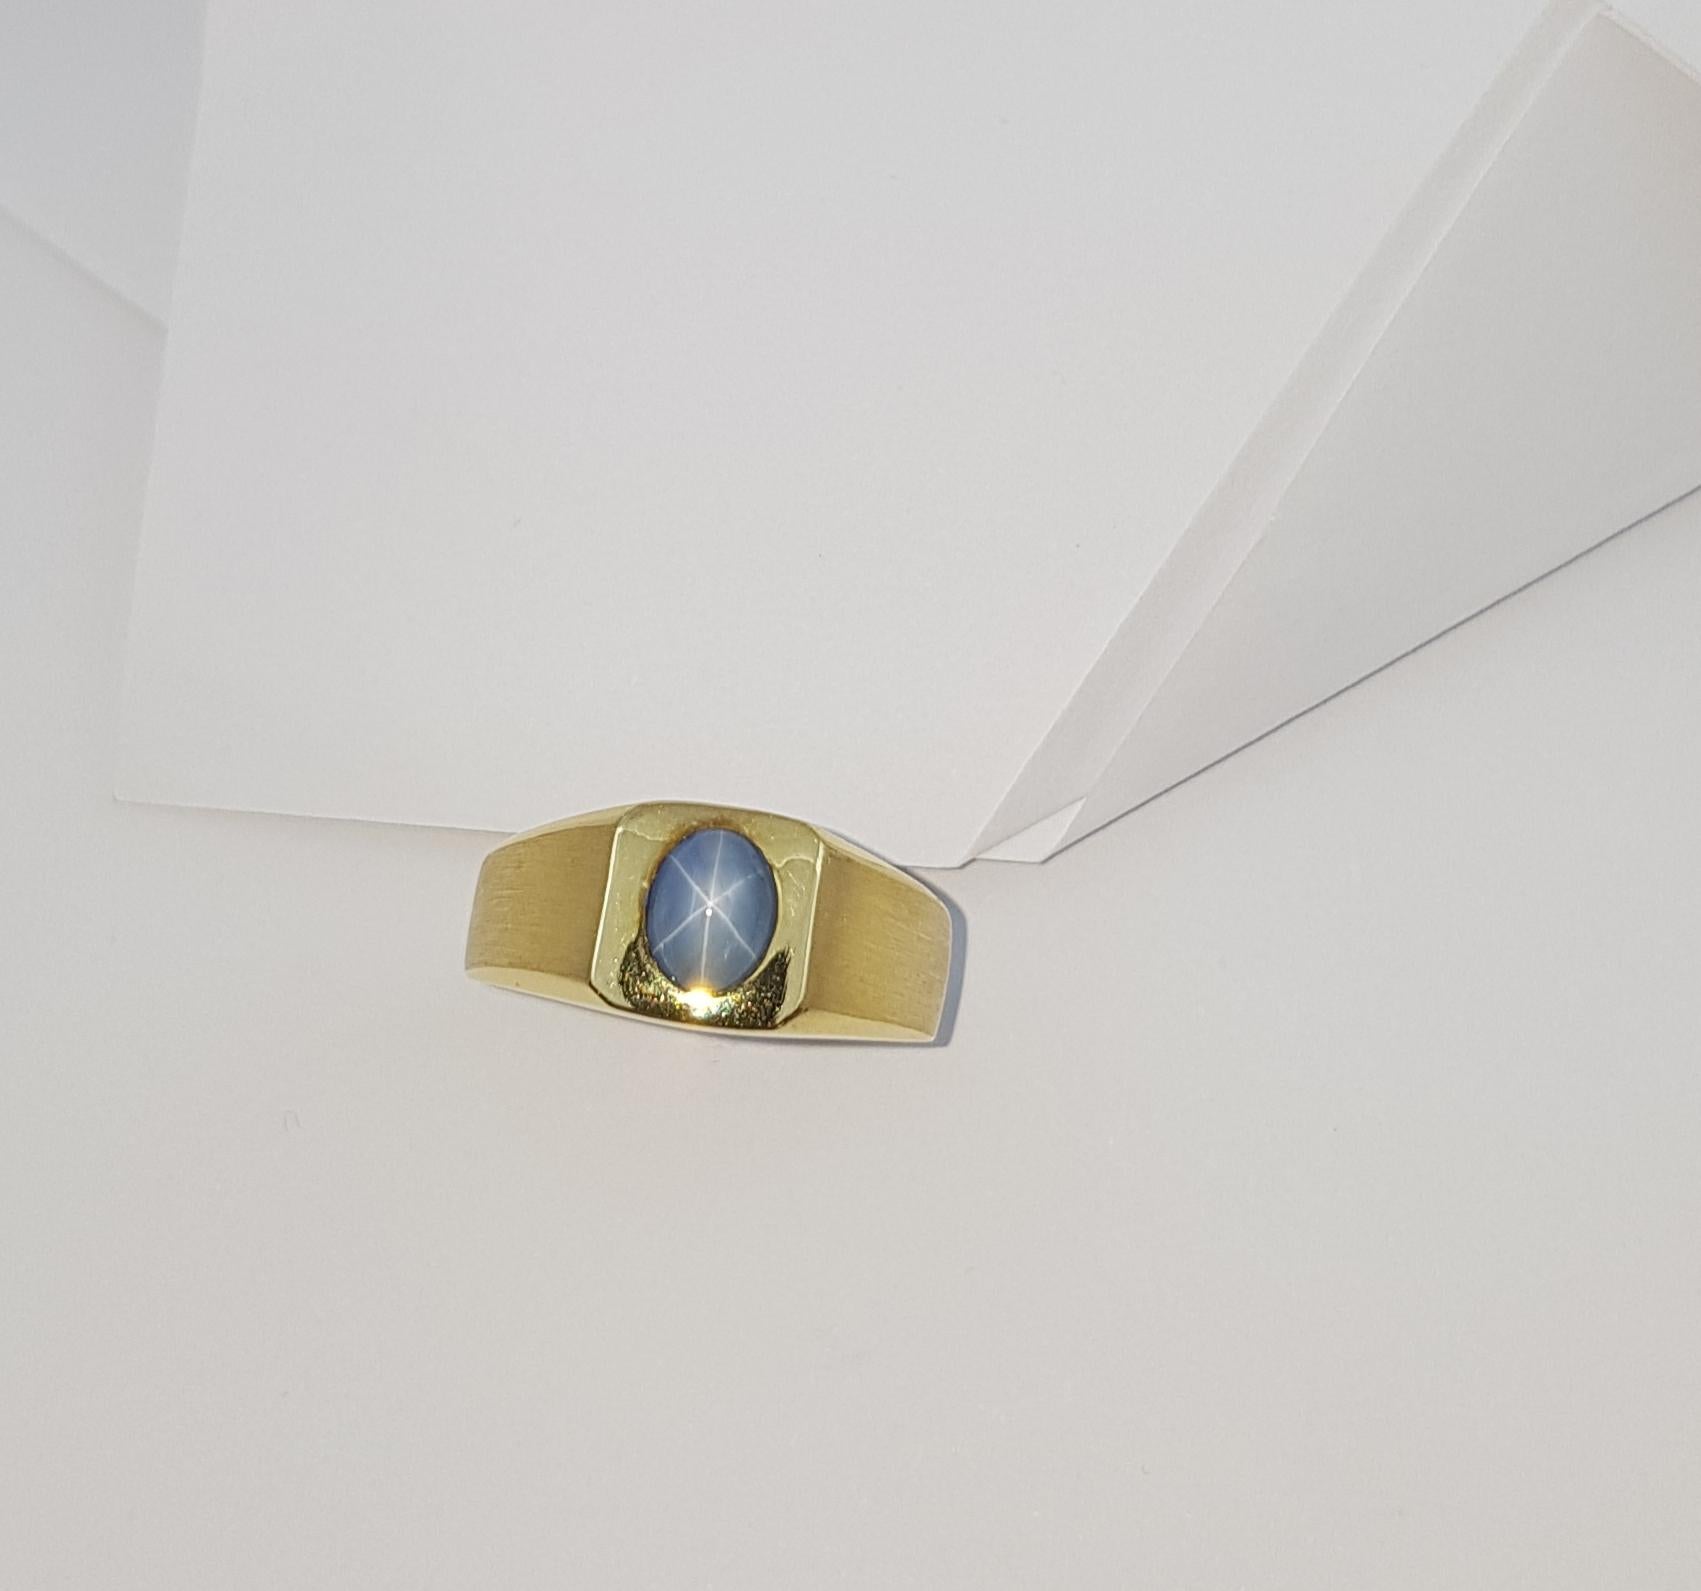 Women's or Men's Blue Star Sapphire Ring Set in 18 Karat Gold Settings For Sale